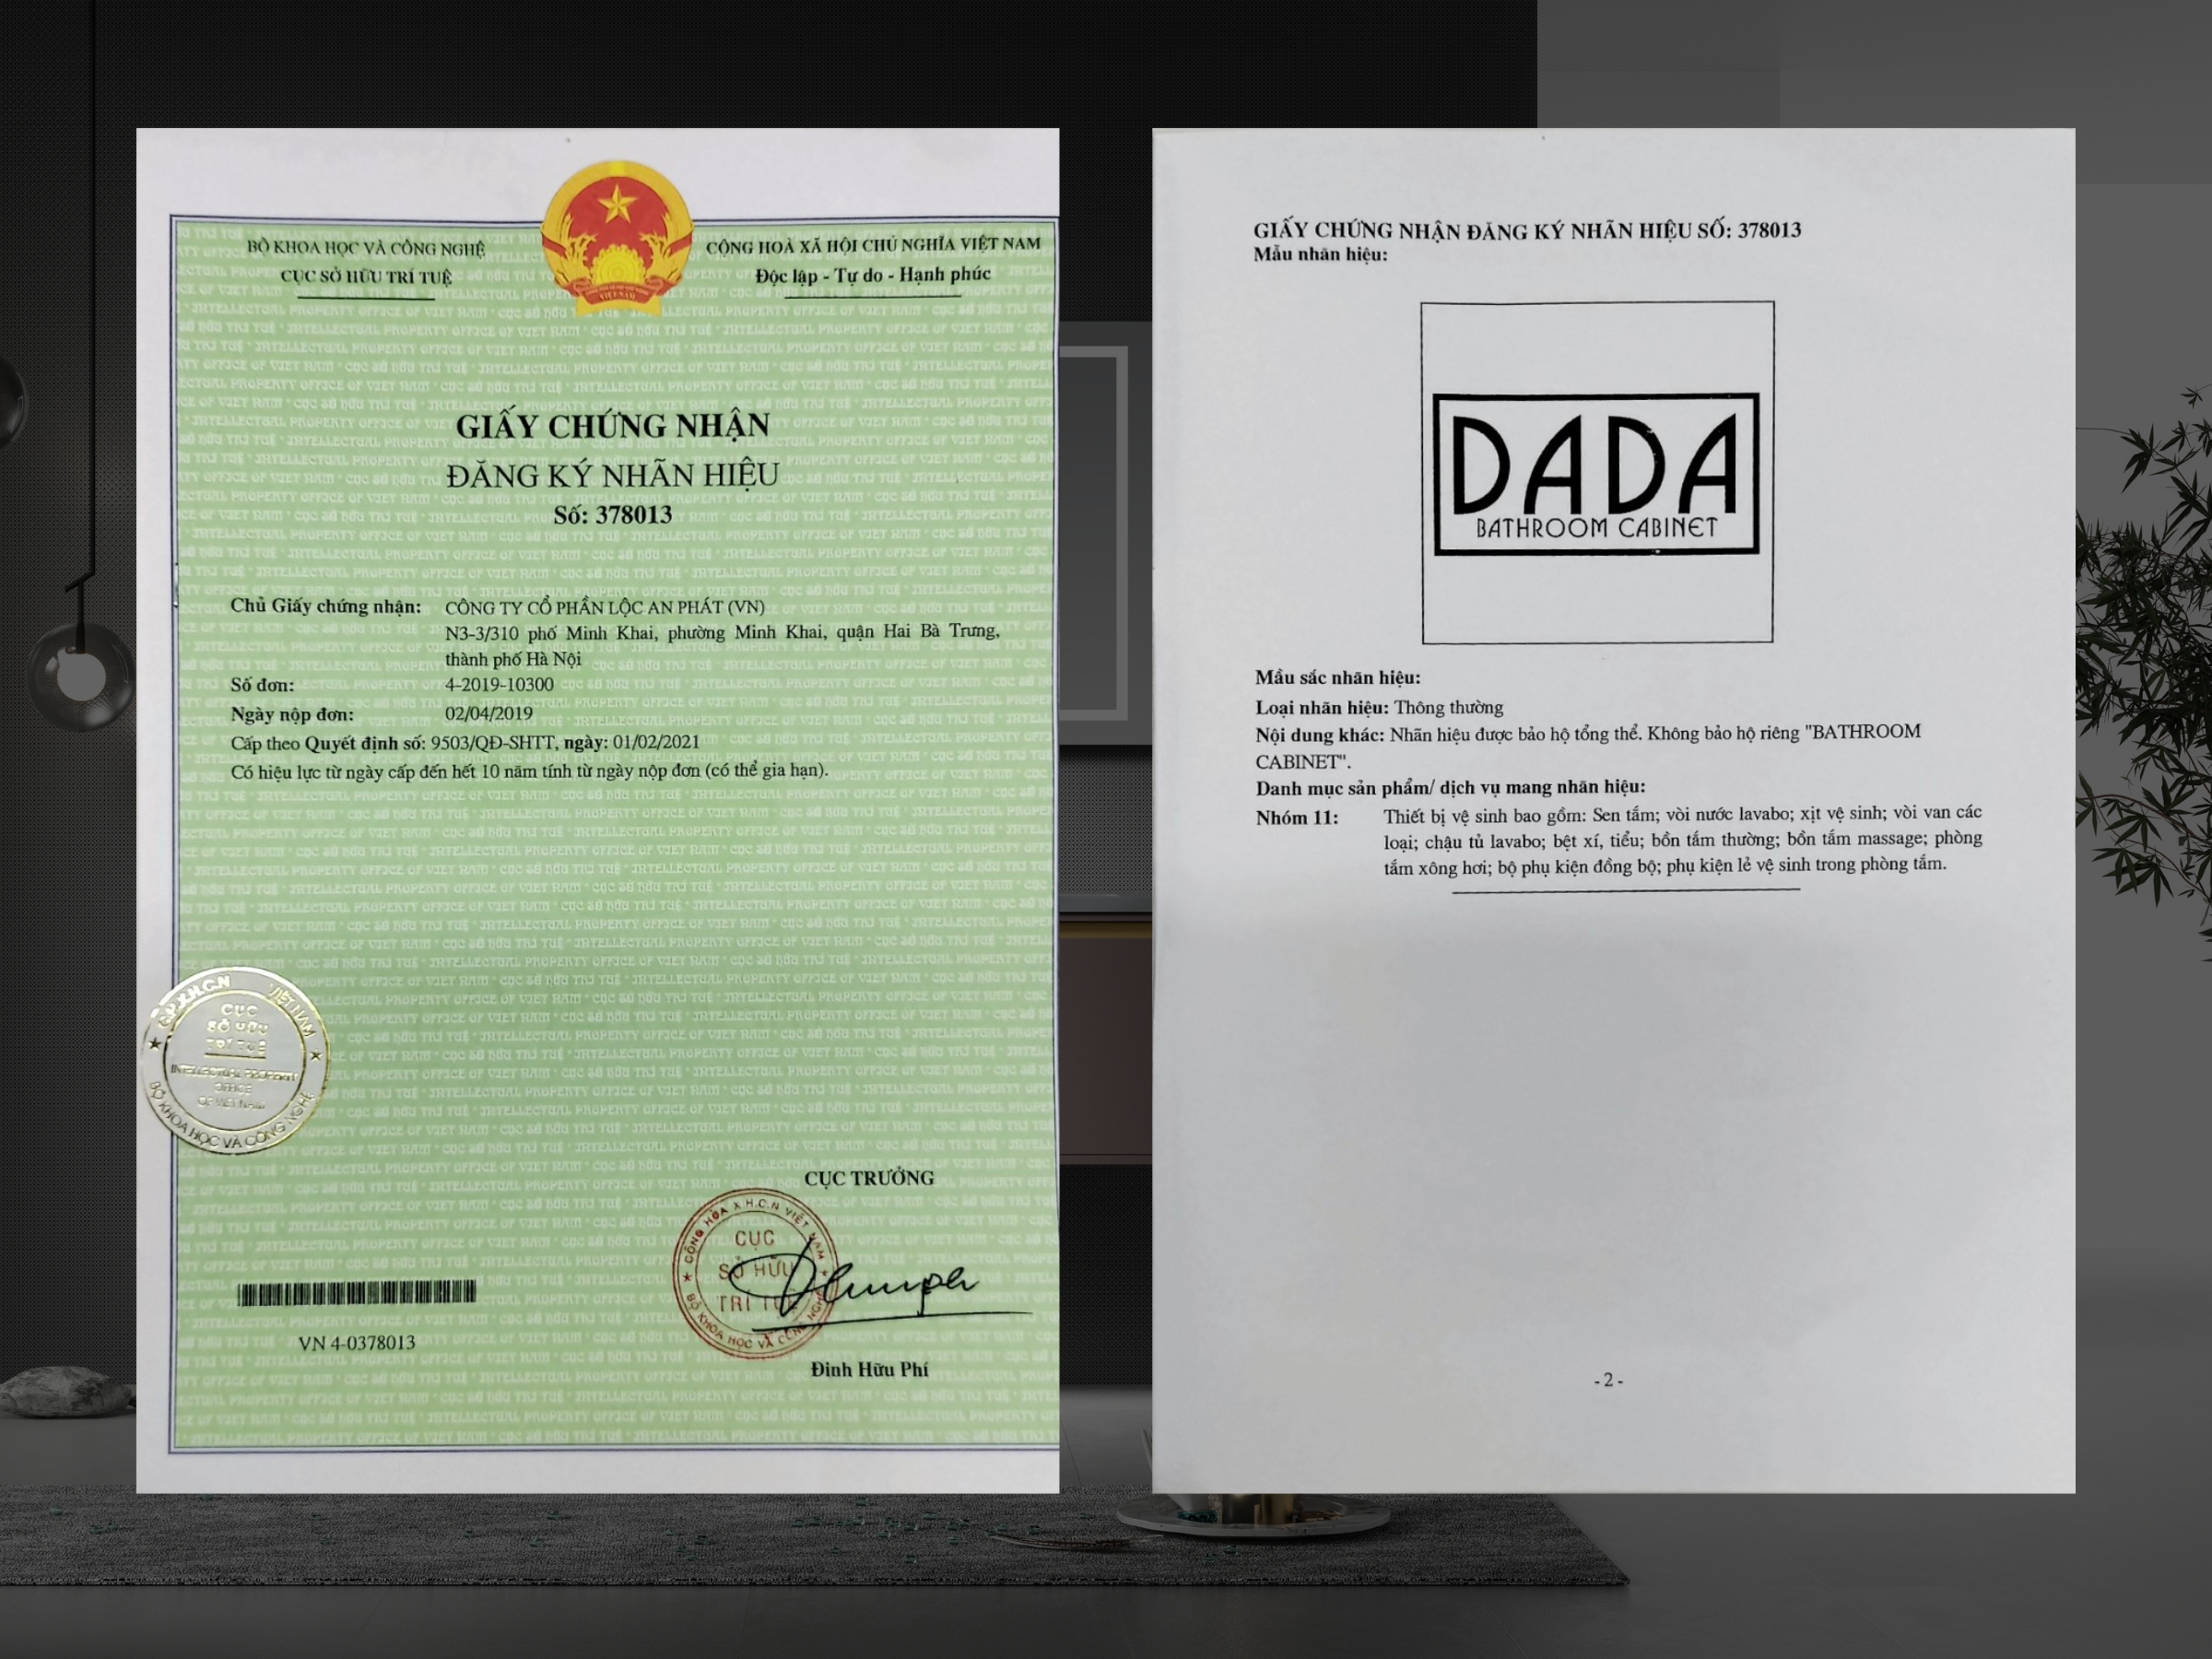 DADA đã được cấp giấy chứng nhận độc quyền thương hiệu do sở kế hoạch đầu tư Hà Nội cấp phép chứng nhận và được bảo hộ tổng thể. 